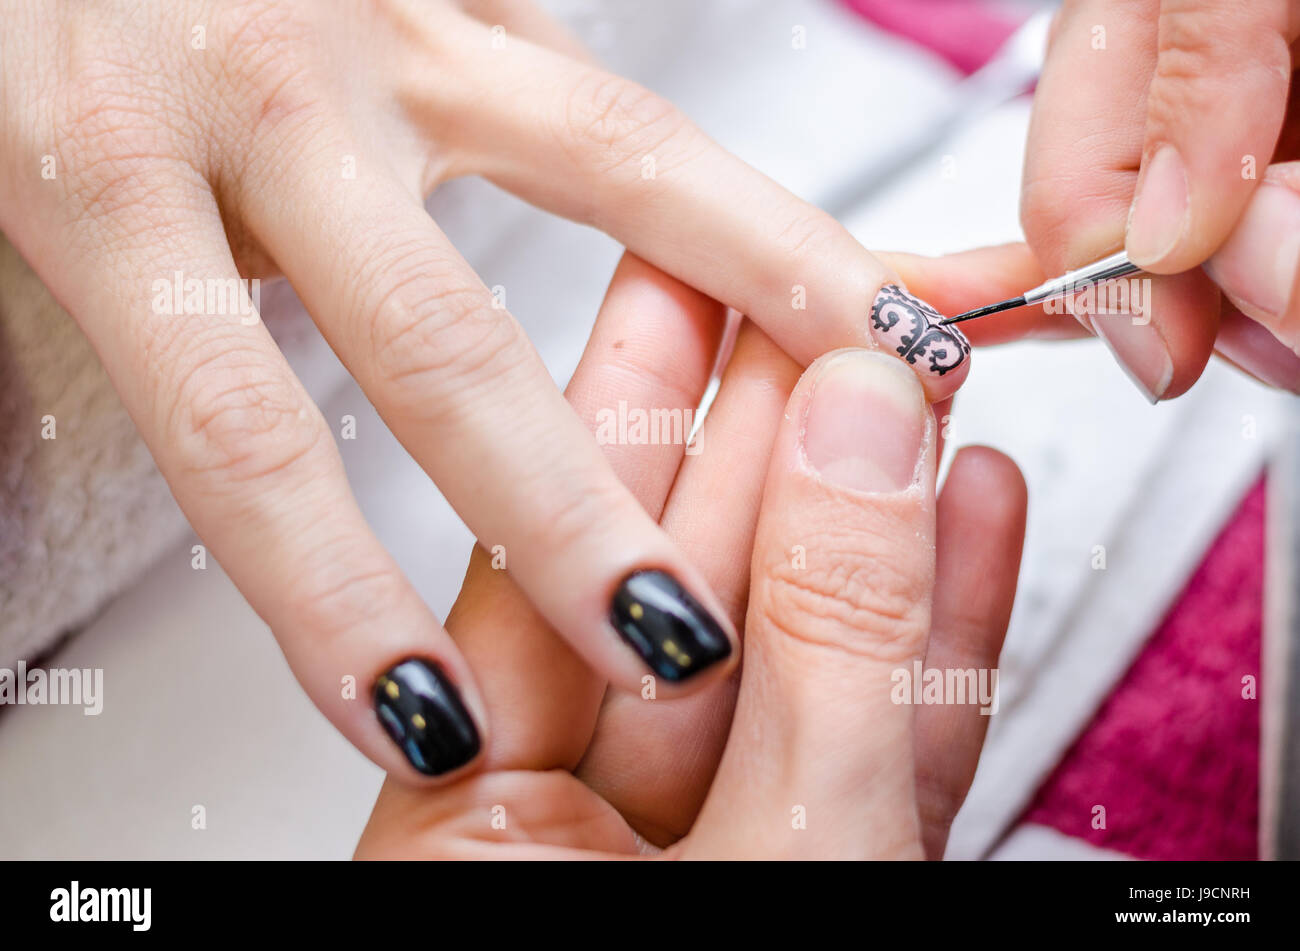 Woman applying black drawing nail polish Stock Photo